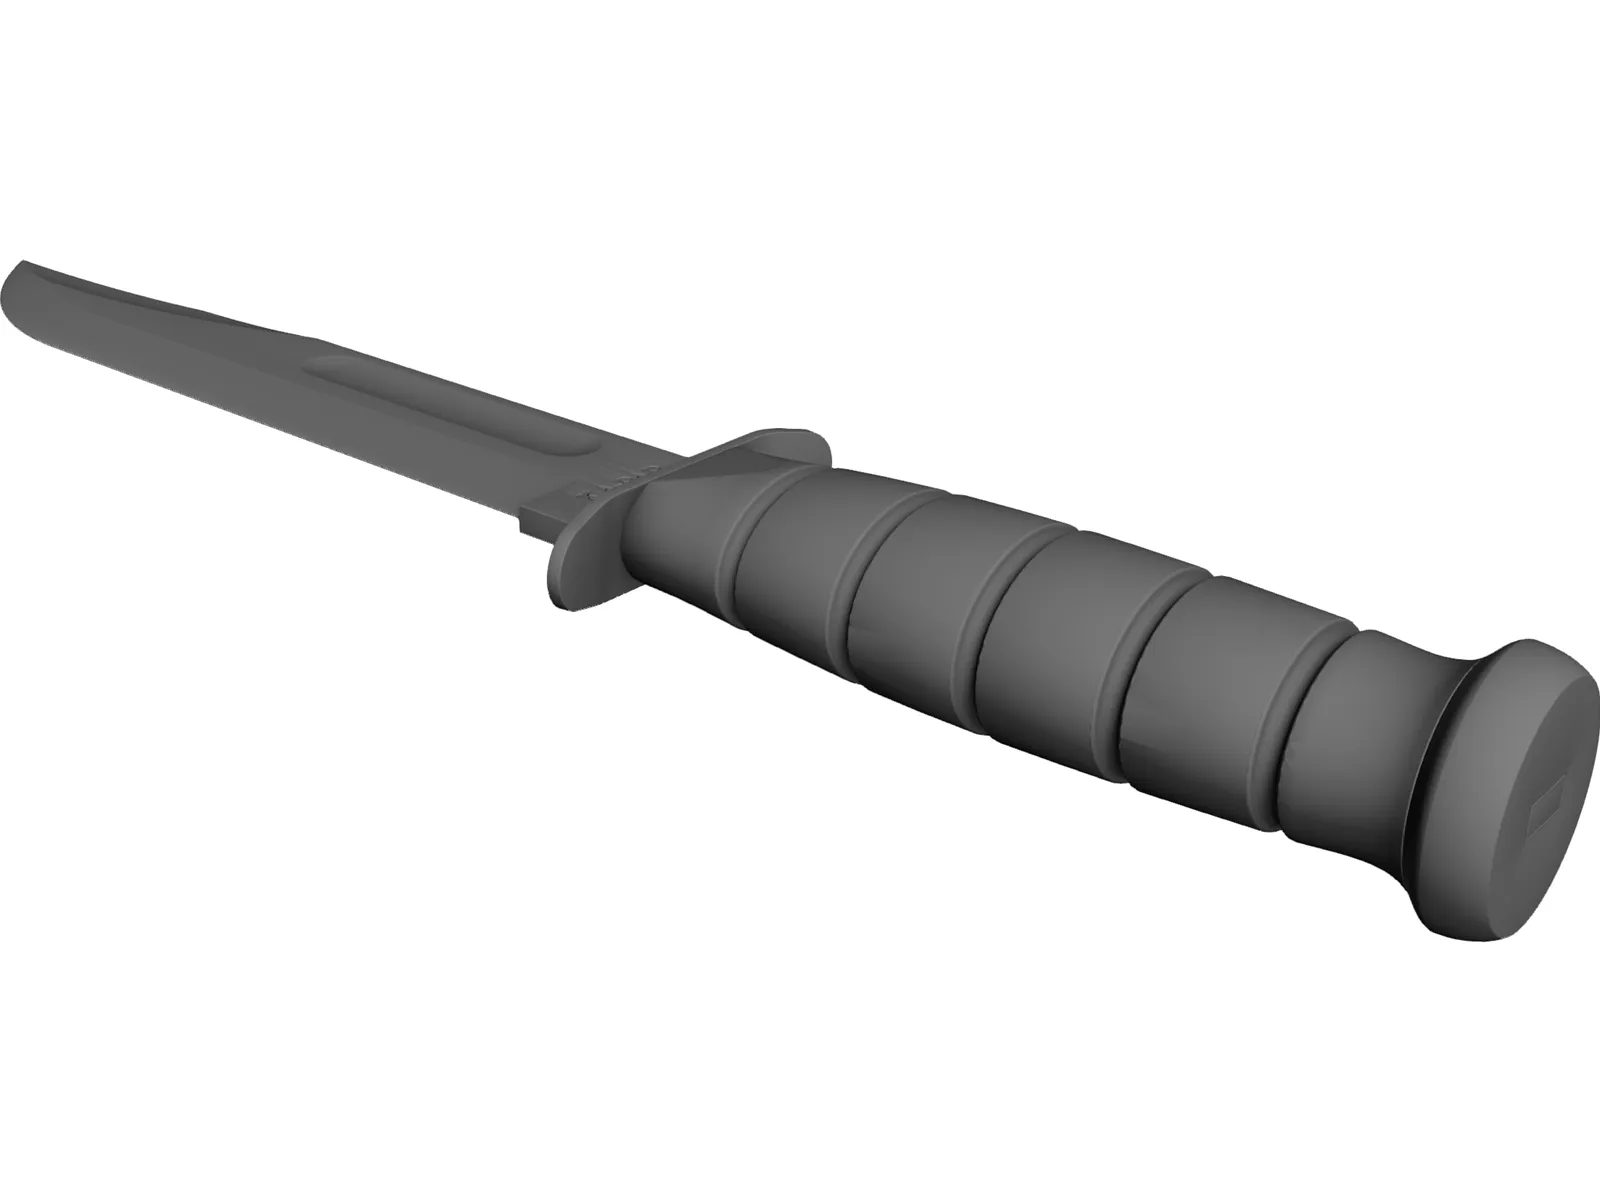 KA-BAR Knife 3D Model